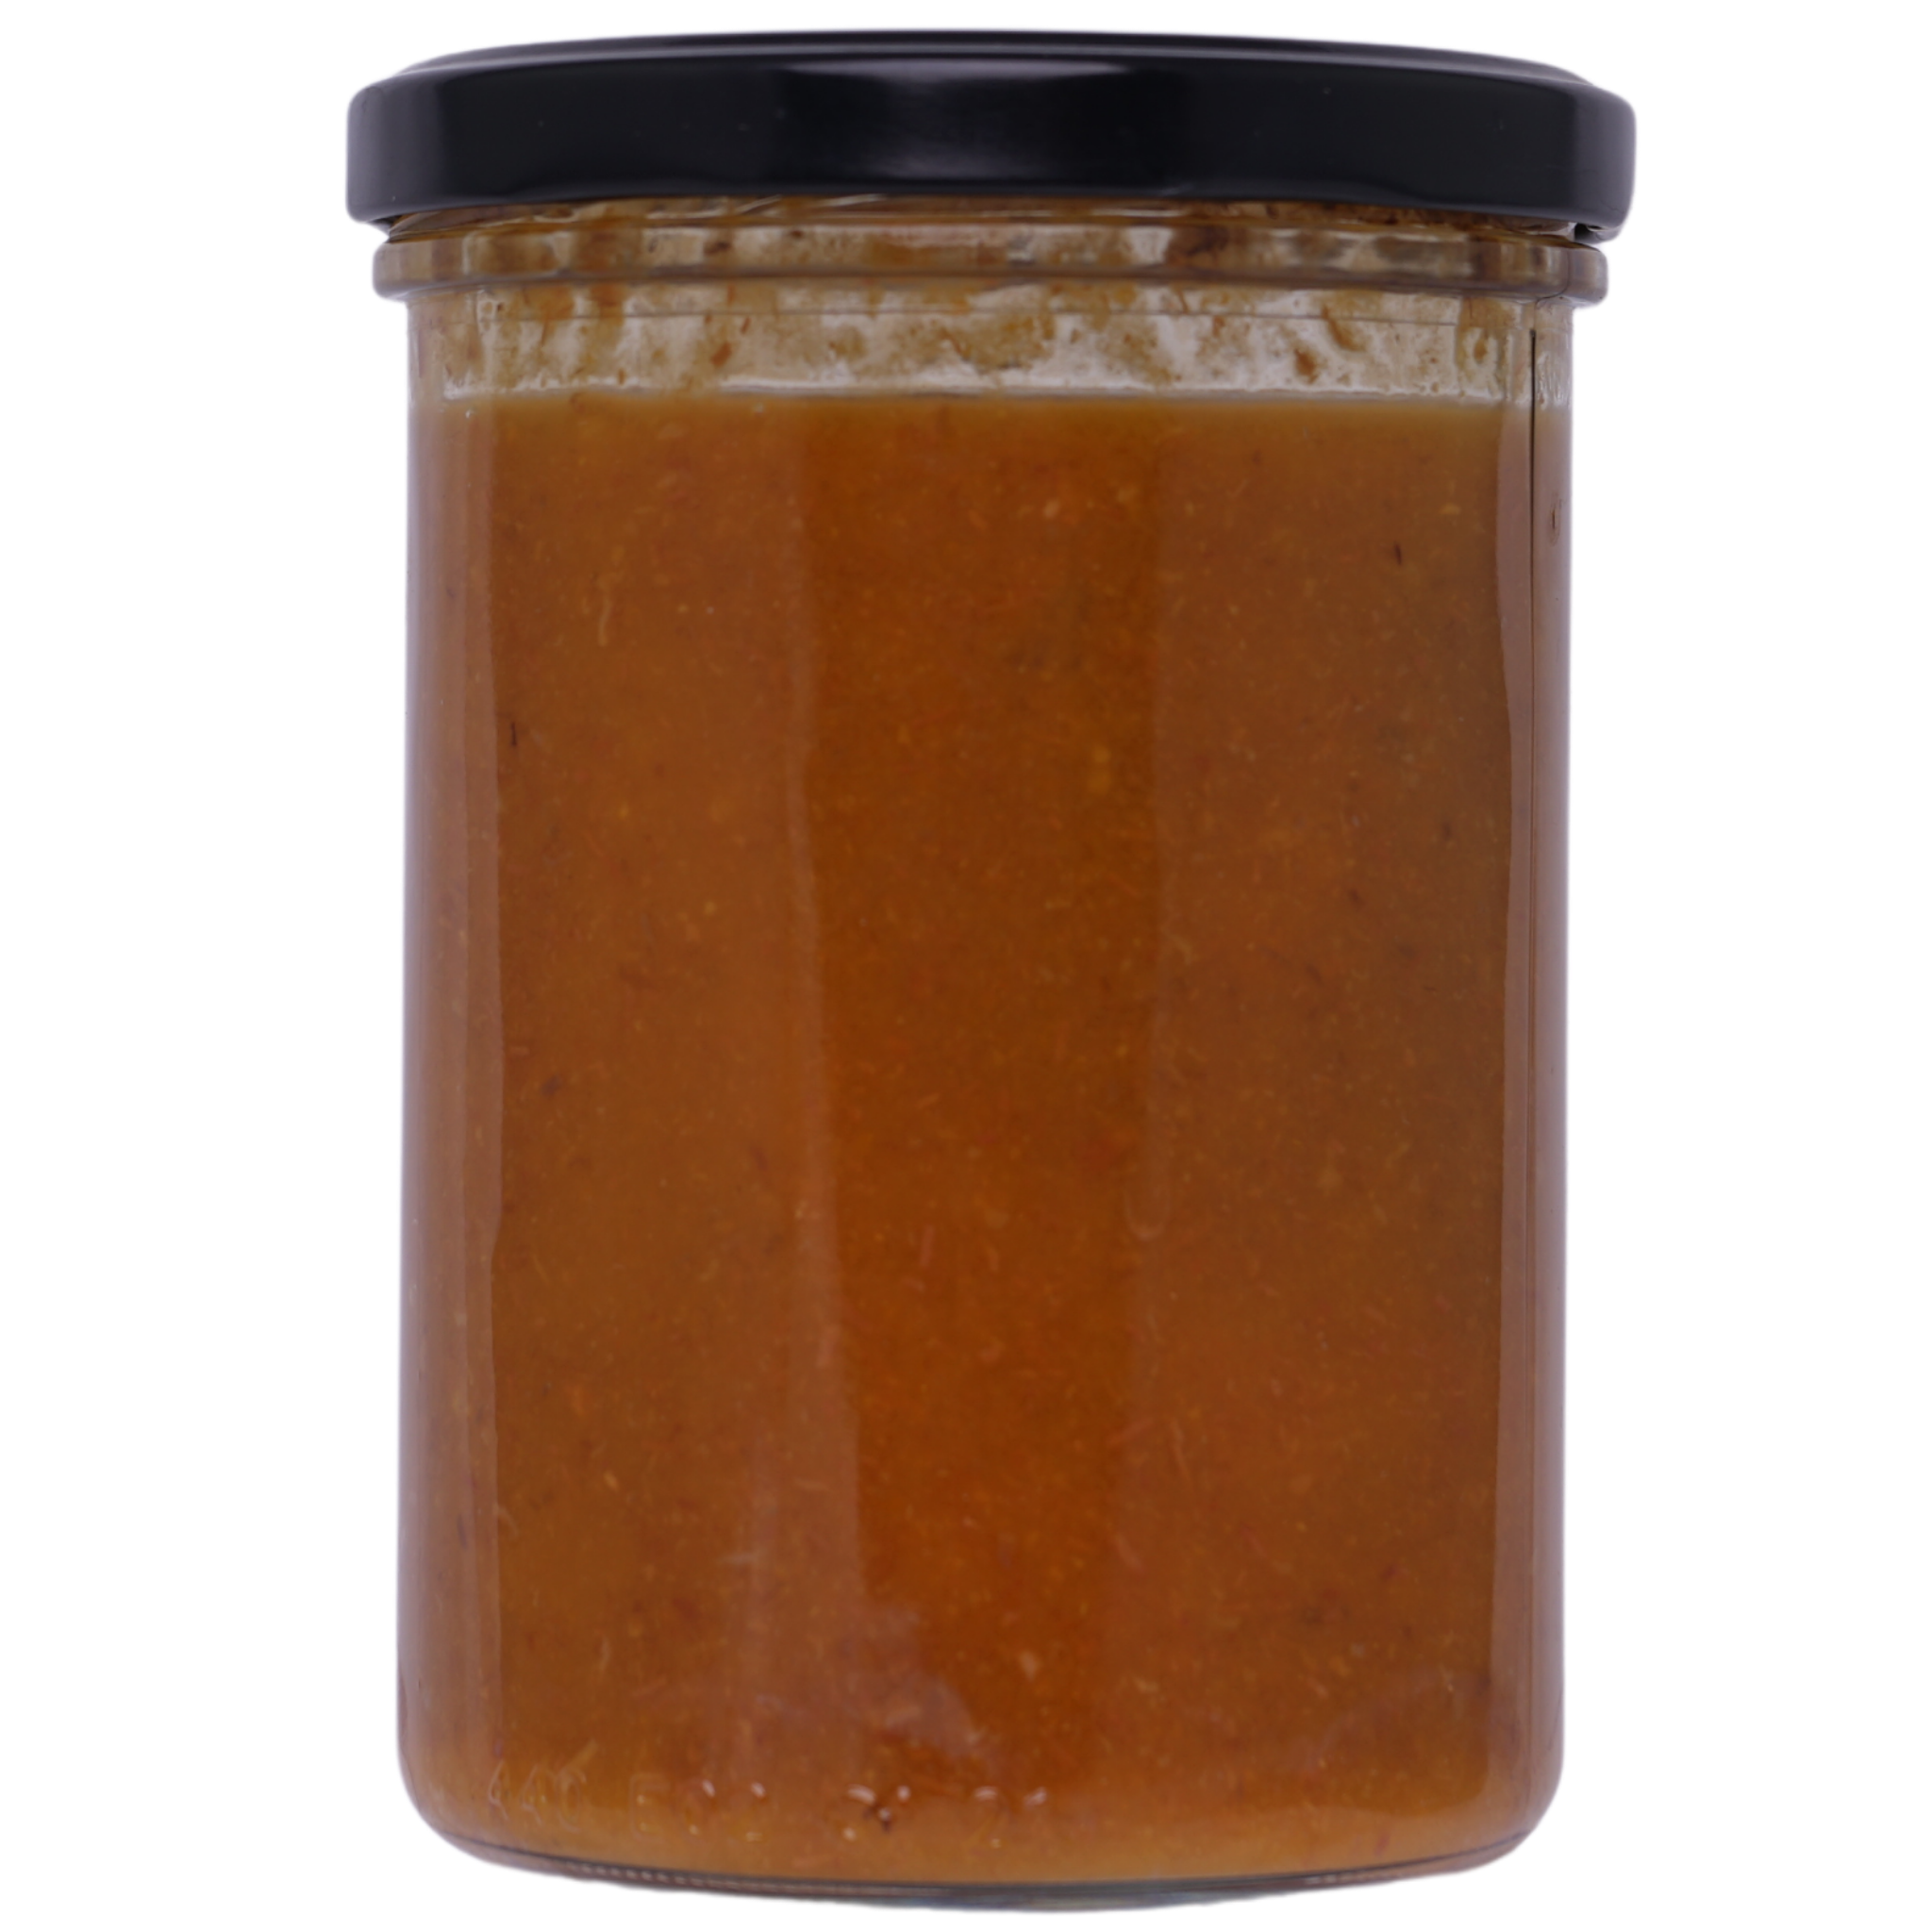 Morosuppe mit Pferdefleisch im Schraubglas ohne Etikett